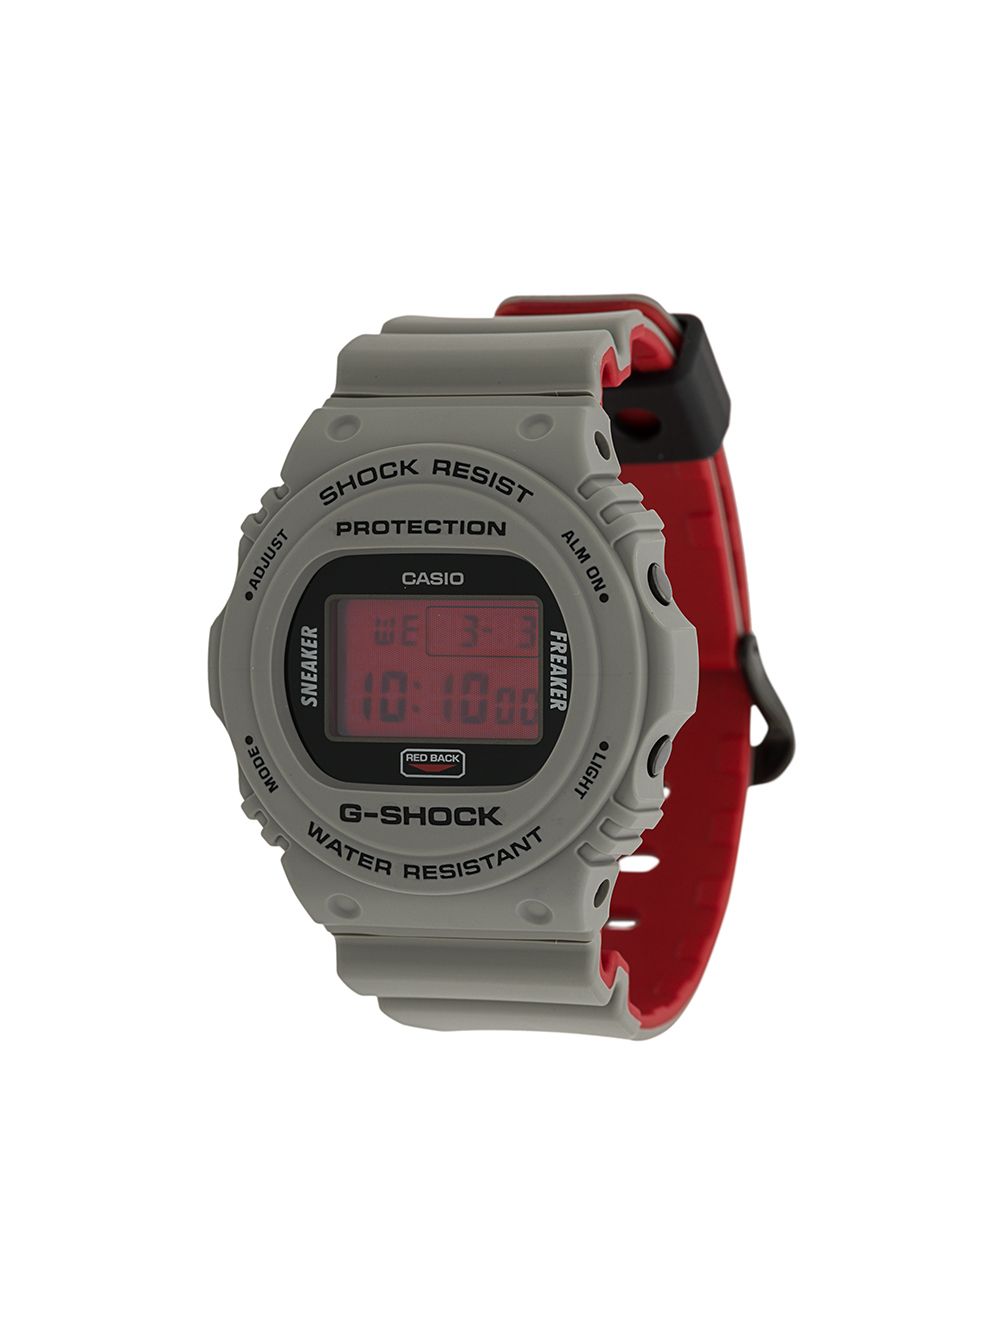 фото G-shock цифровые часы 'g-shock protection'